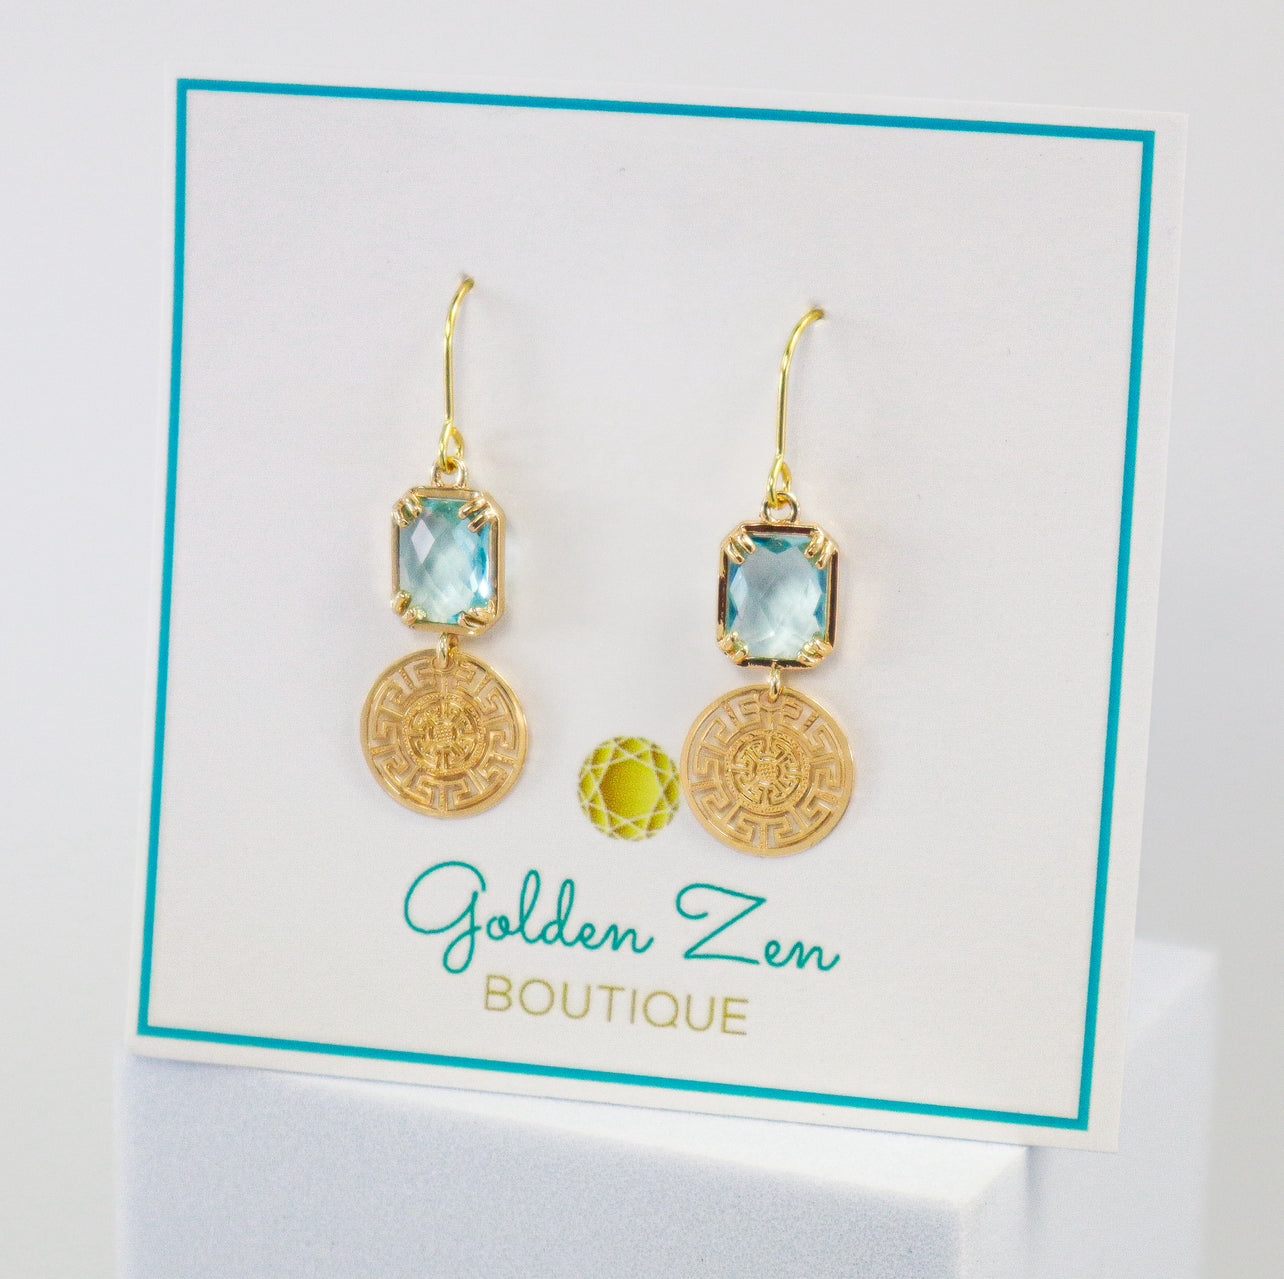 Golden Zen Exclusive Greek Key Aqua Blue Crystal Earrings